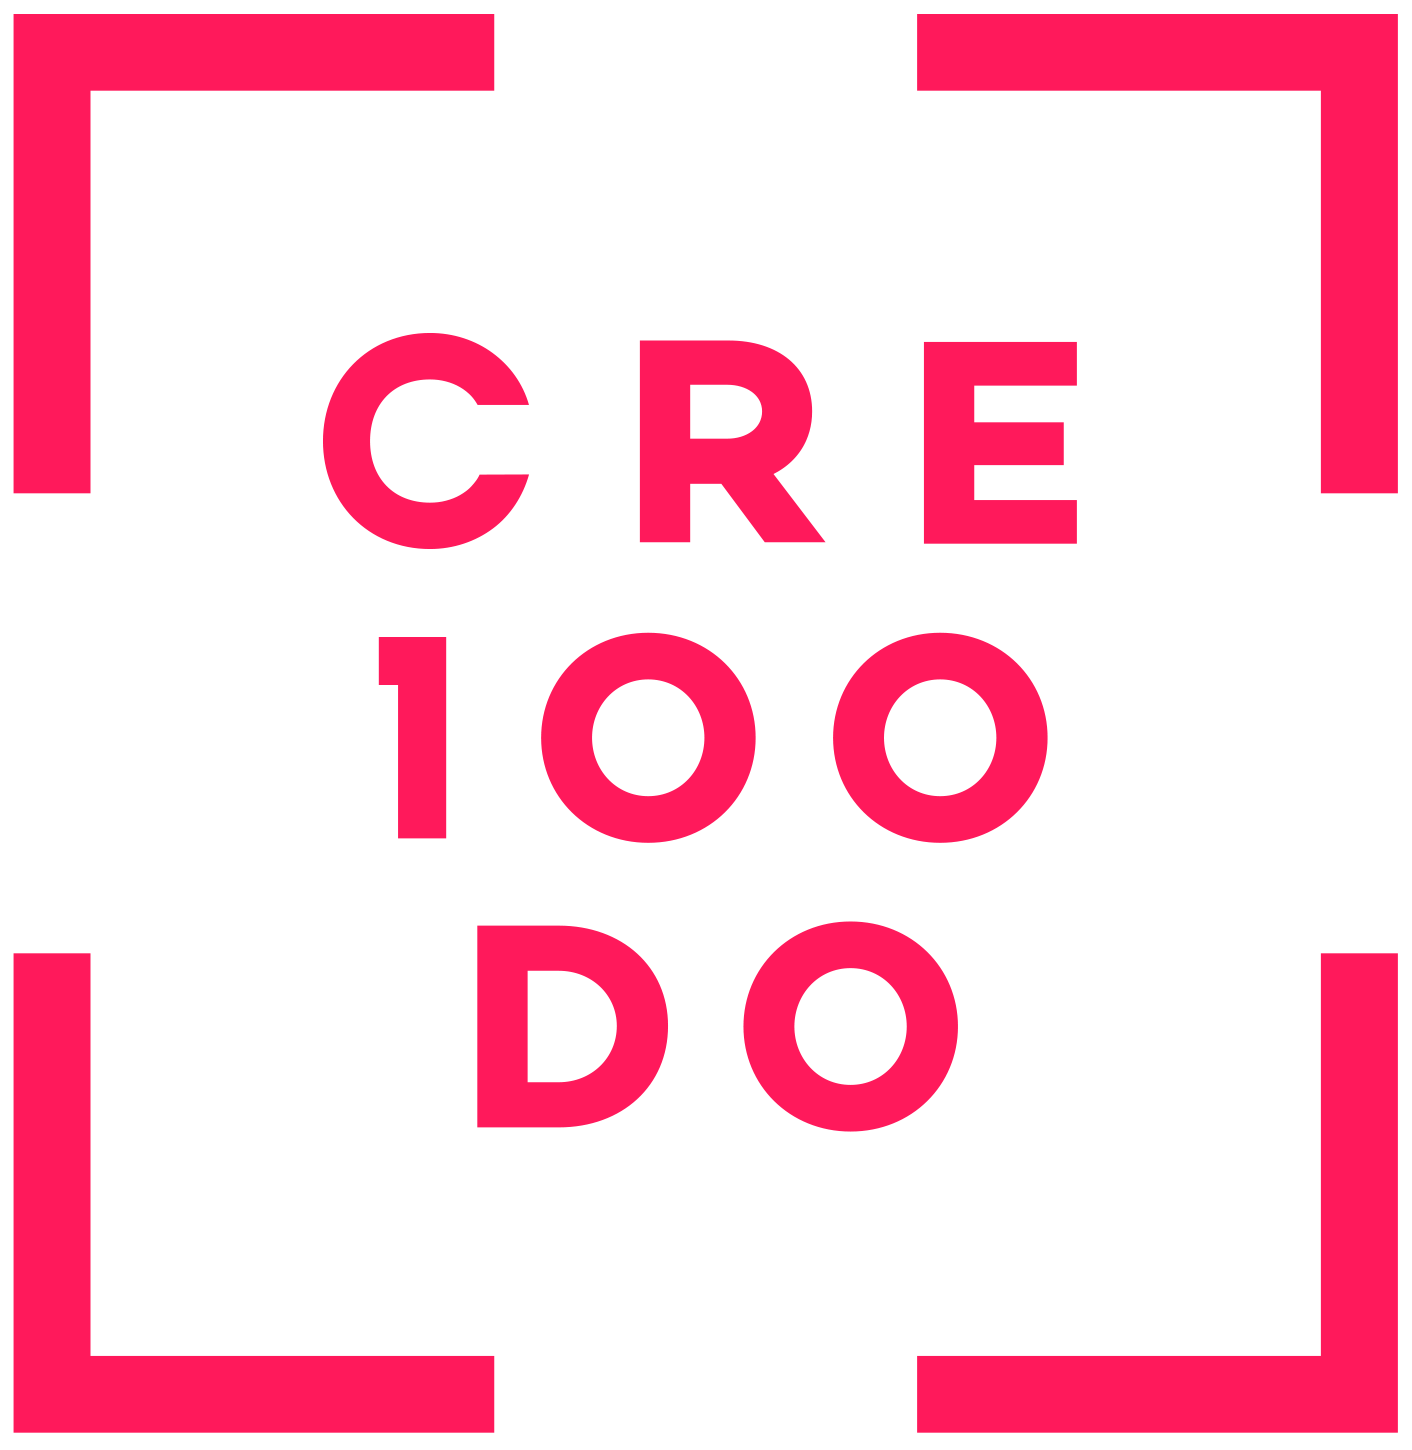 Fundación CRE100DO